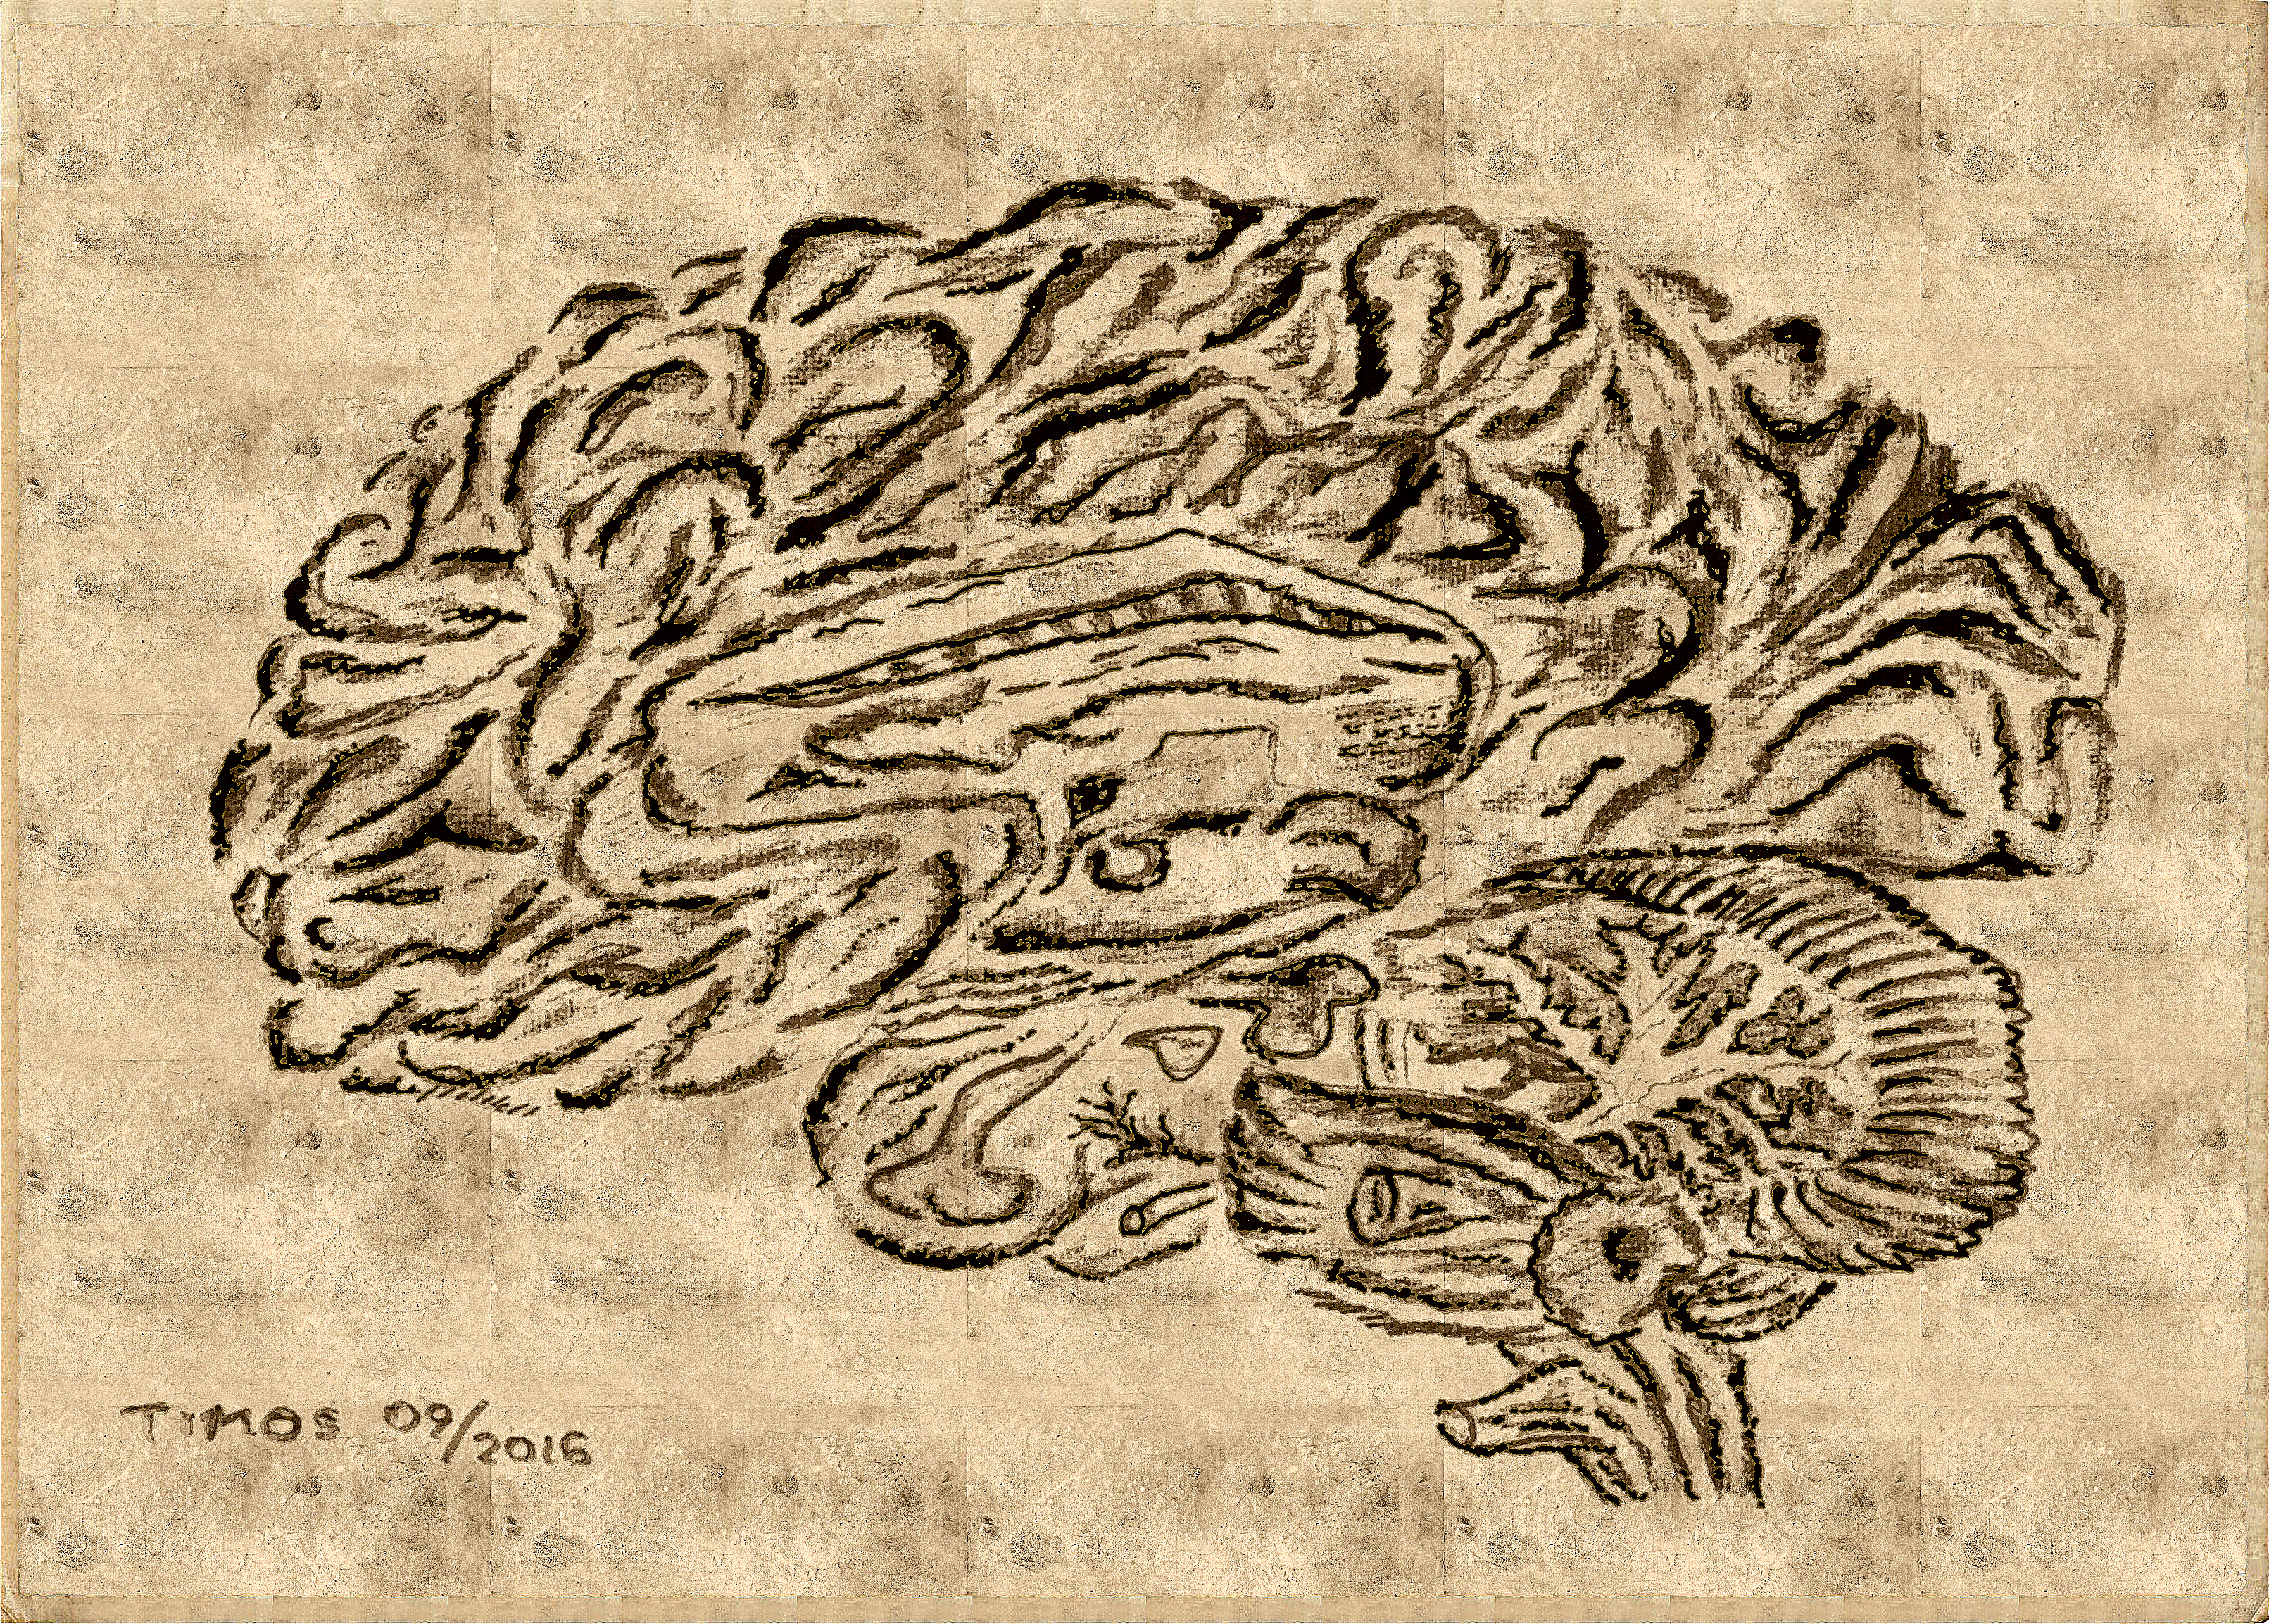 Brain, anatomical